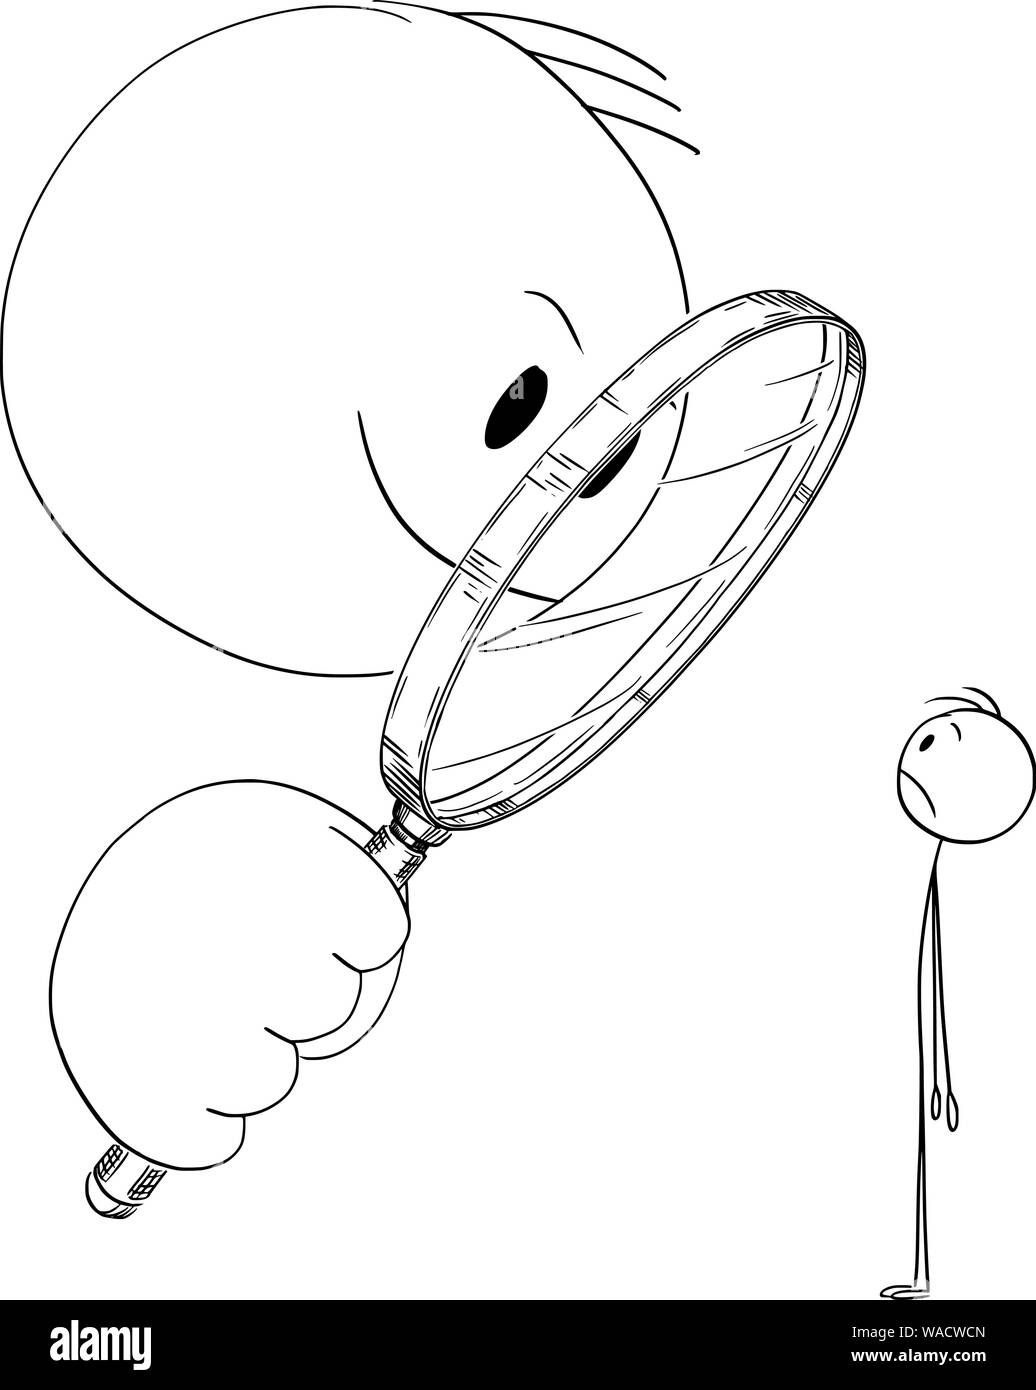 Vector cartoon stick figura disegno illustrazione concettuale dell'uomo o imprenditore guardando attraverso la lente di ingrandimento o lente di ingrandimento a un piccolo uomo. Illustrazione Vettoriale